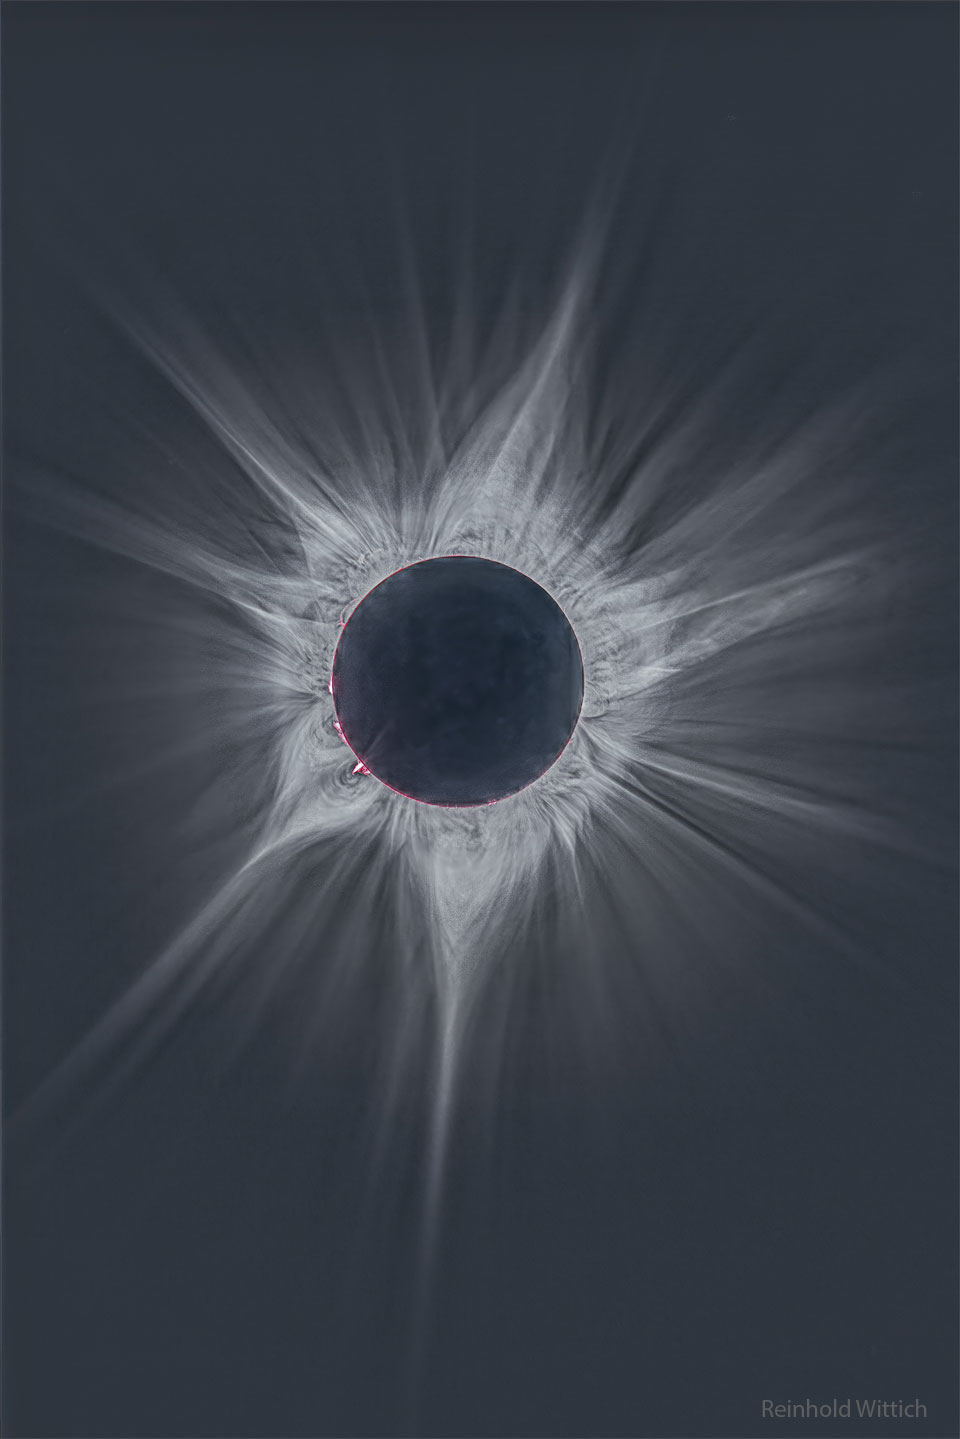 Eclipse totale et grande couronne